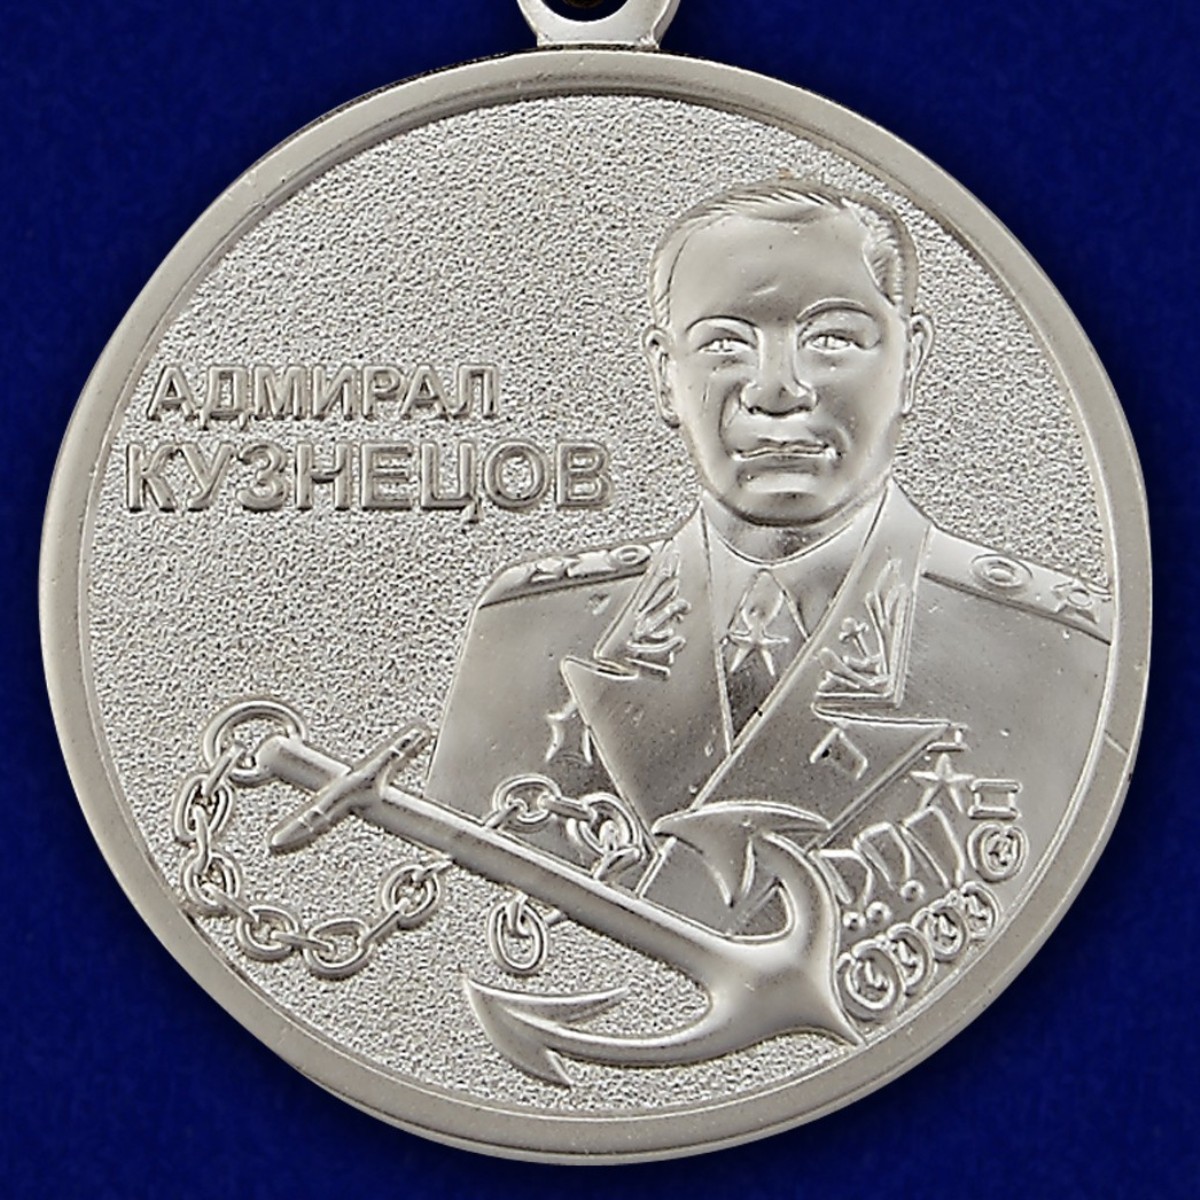 Медаль МО РФ "Адмирал Кузнецов" 